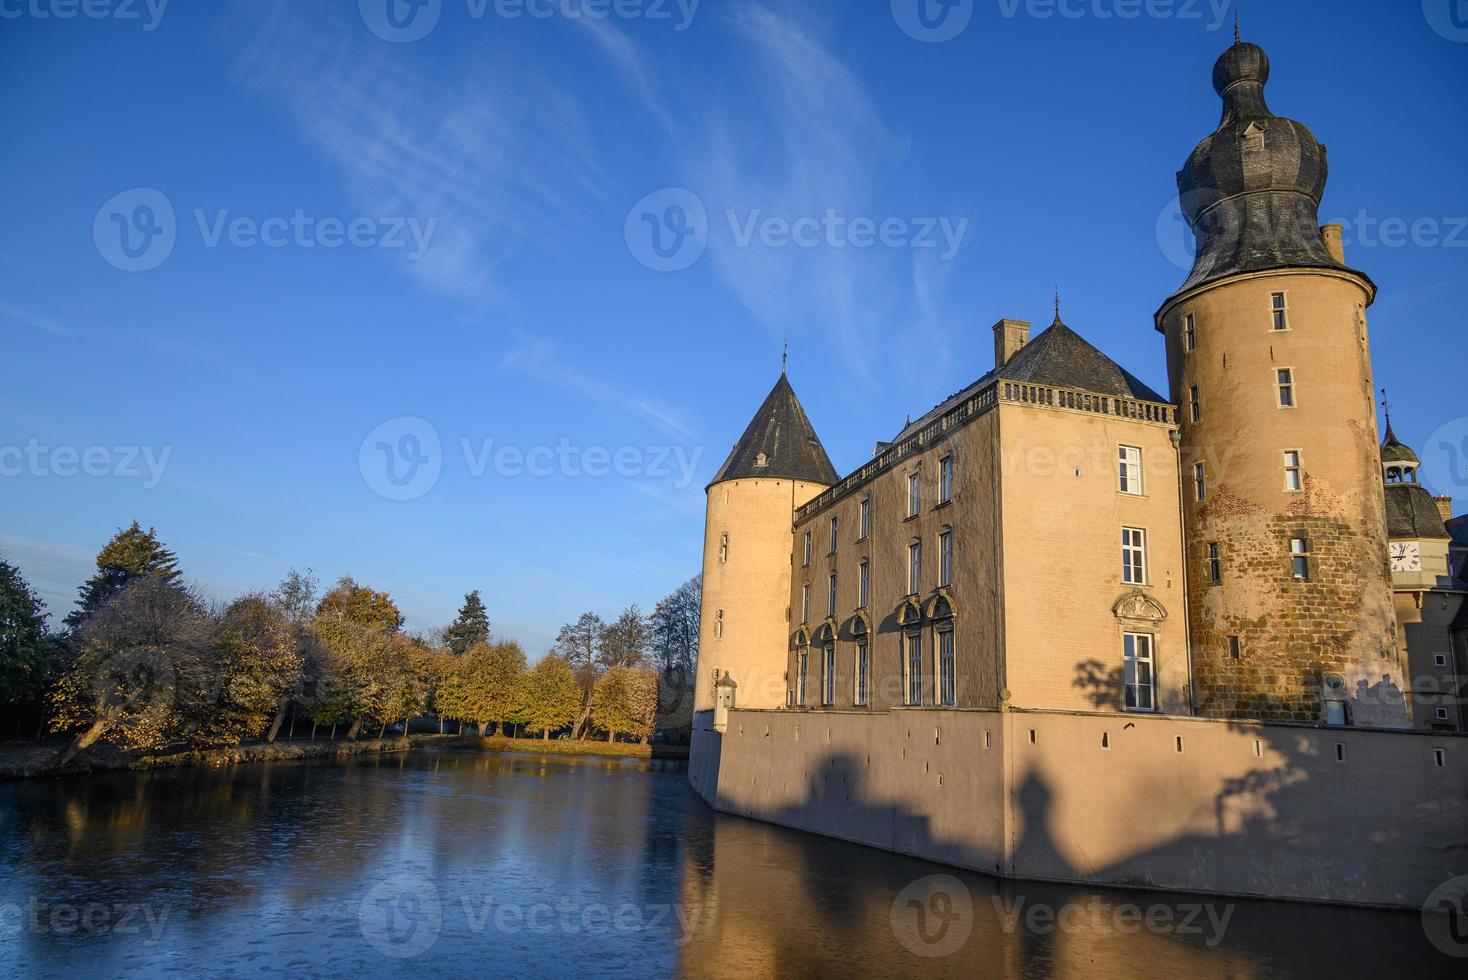 Herbst auf einem Schloss in Westfalen foto